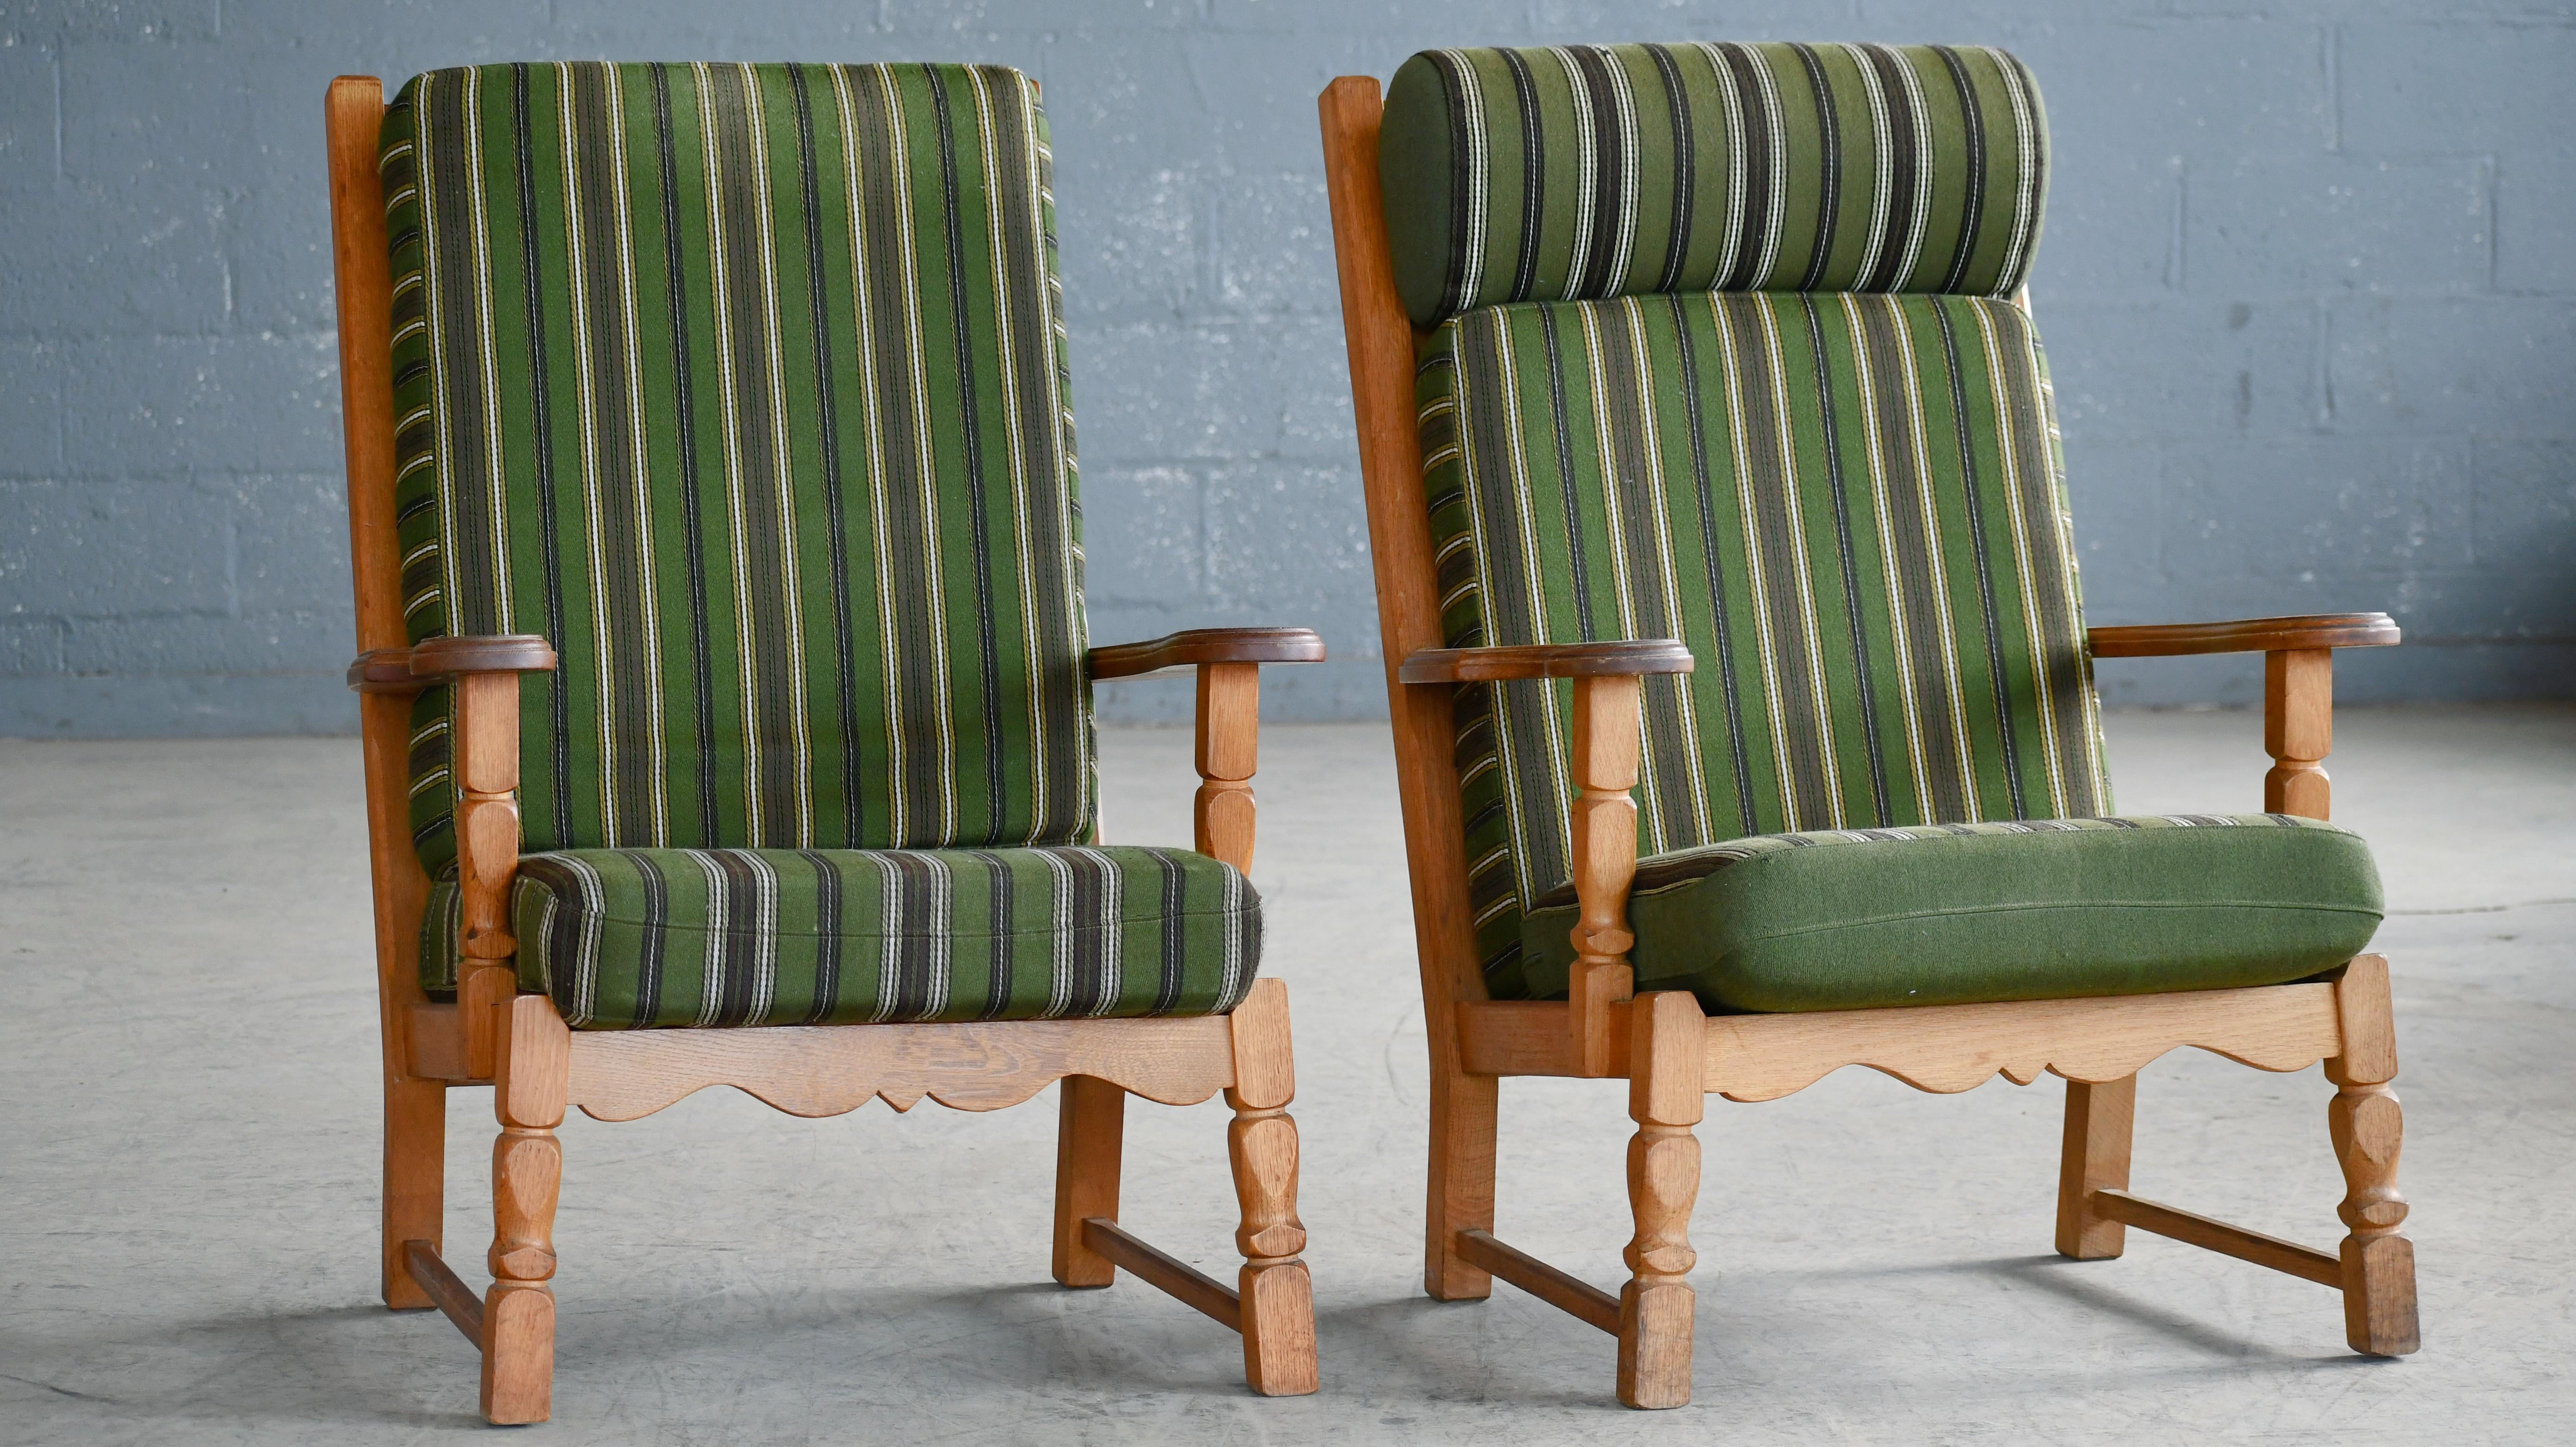 Scandinavian Modern Danish Mid-Century Carved Oak Lounge Chairs in Oak by Kjaernulf, 1960's For Sale